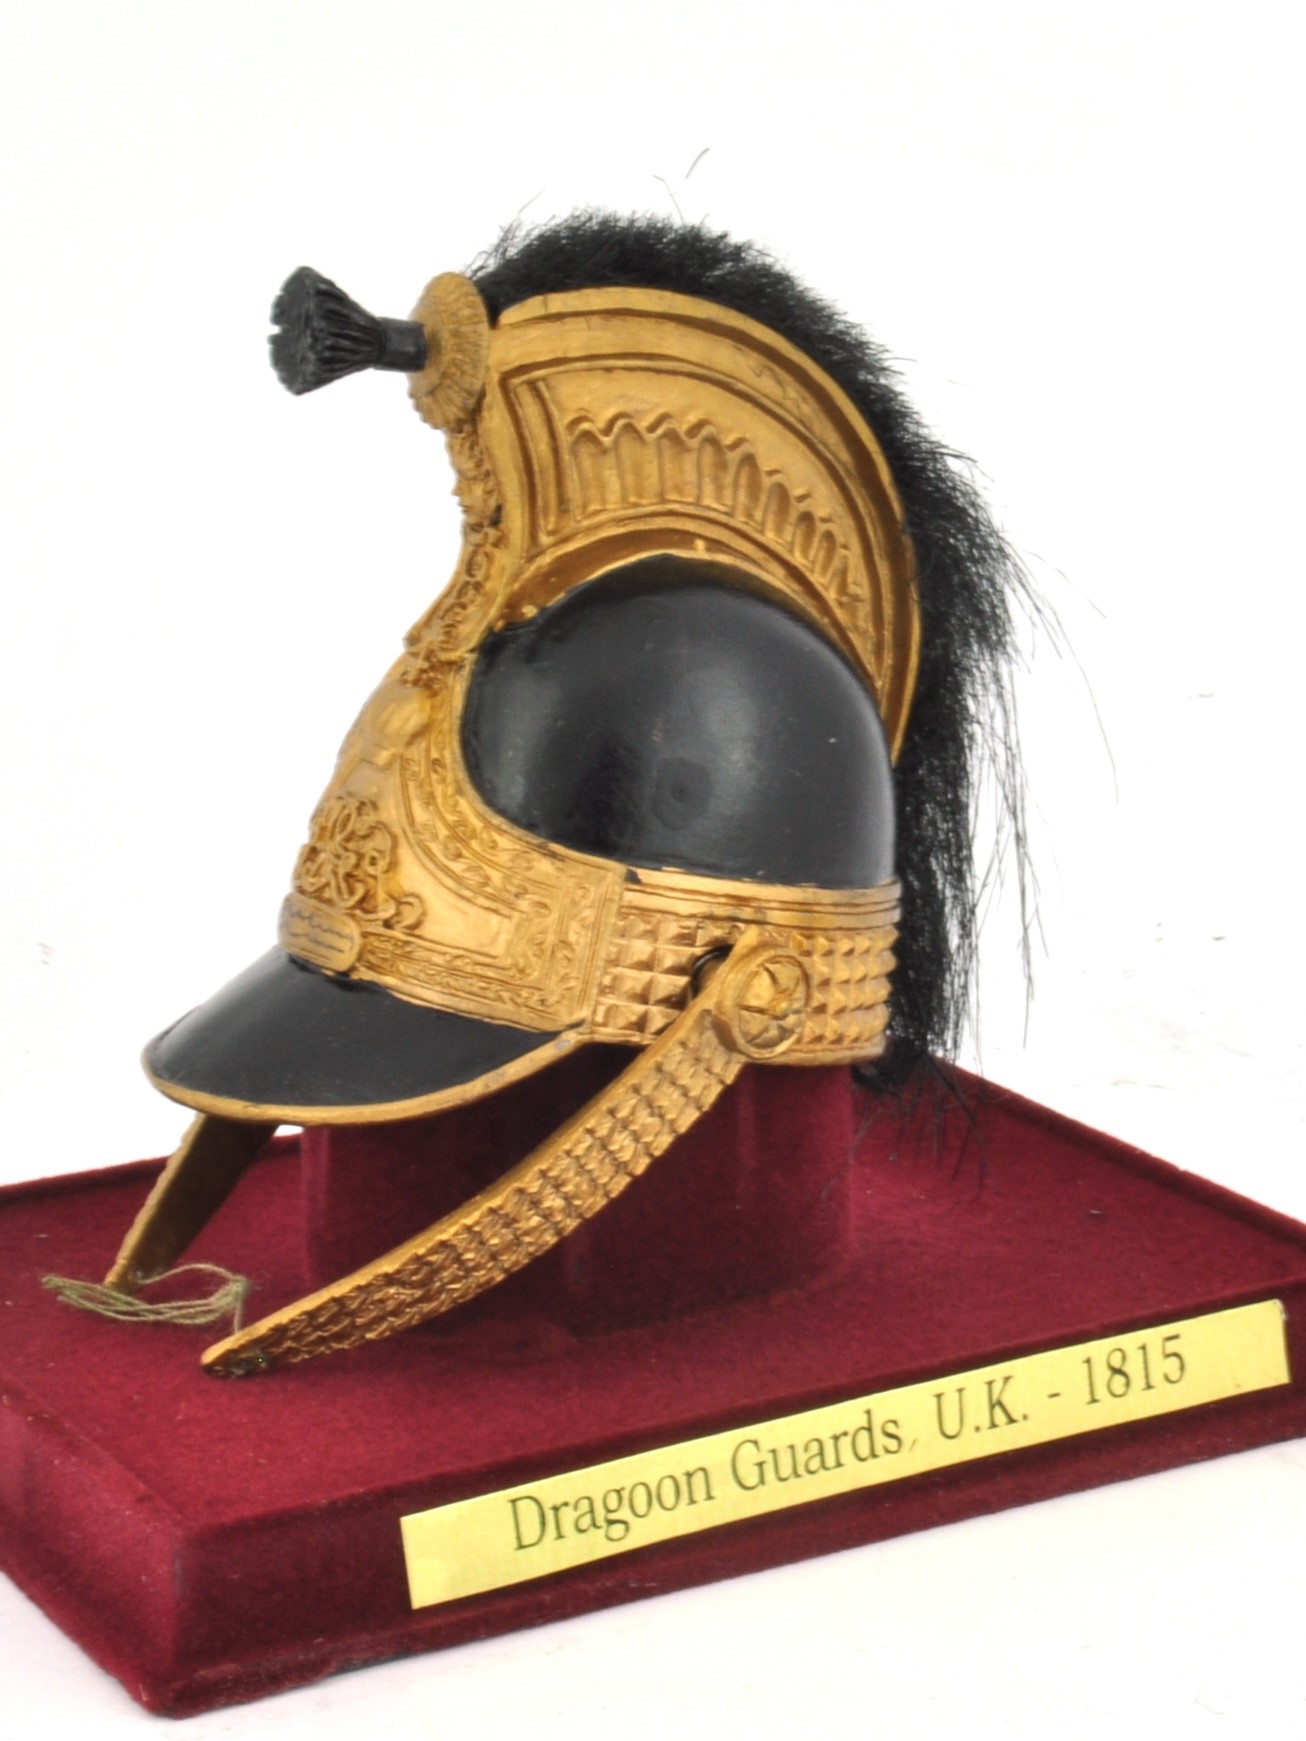 Dragoon Guards U.K. - 1815